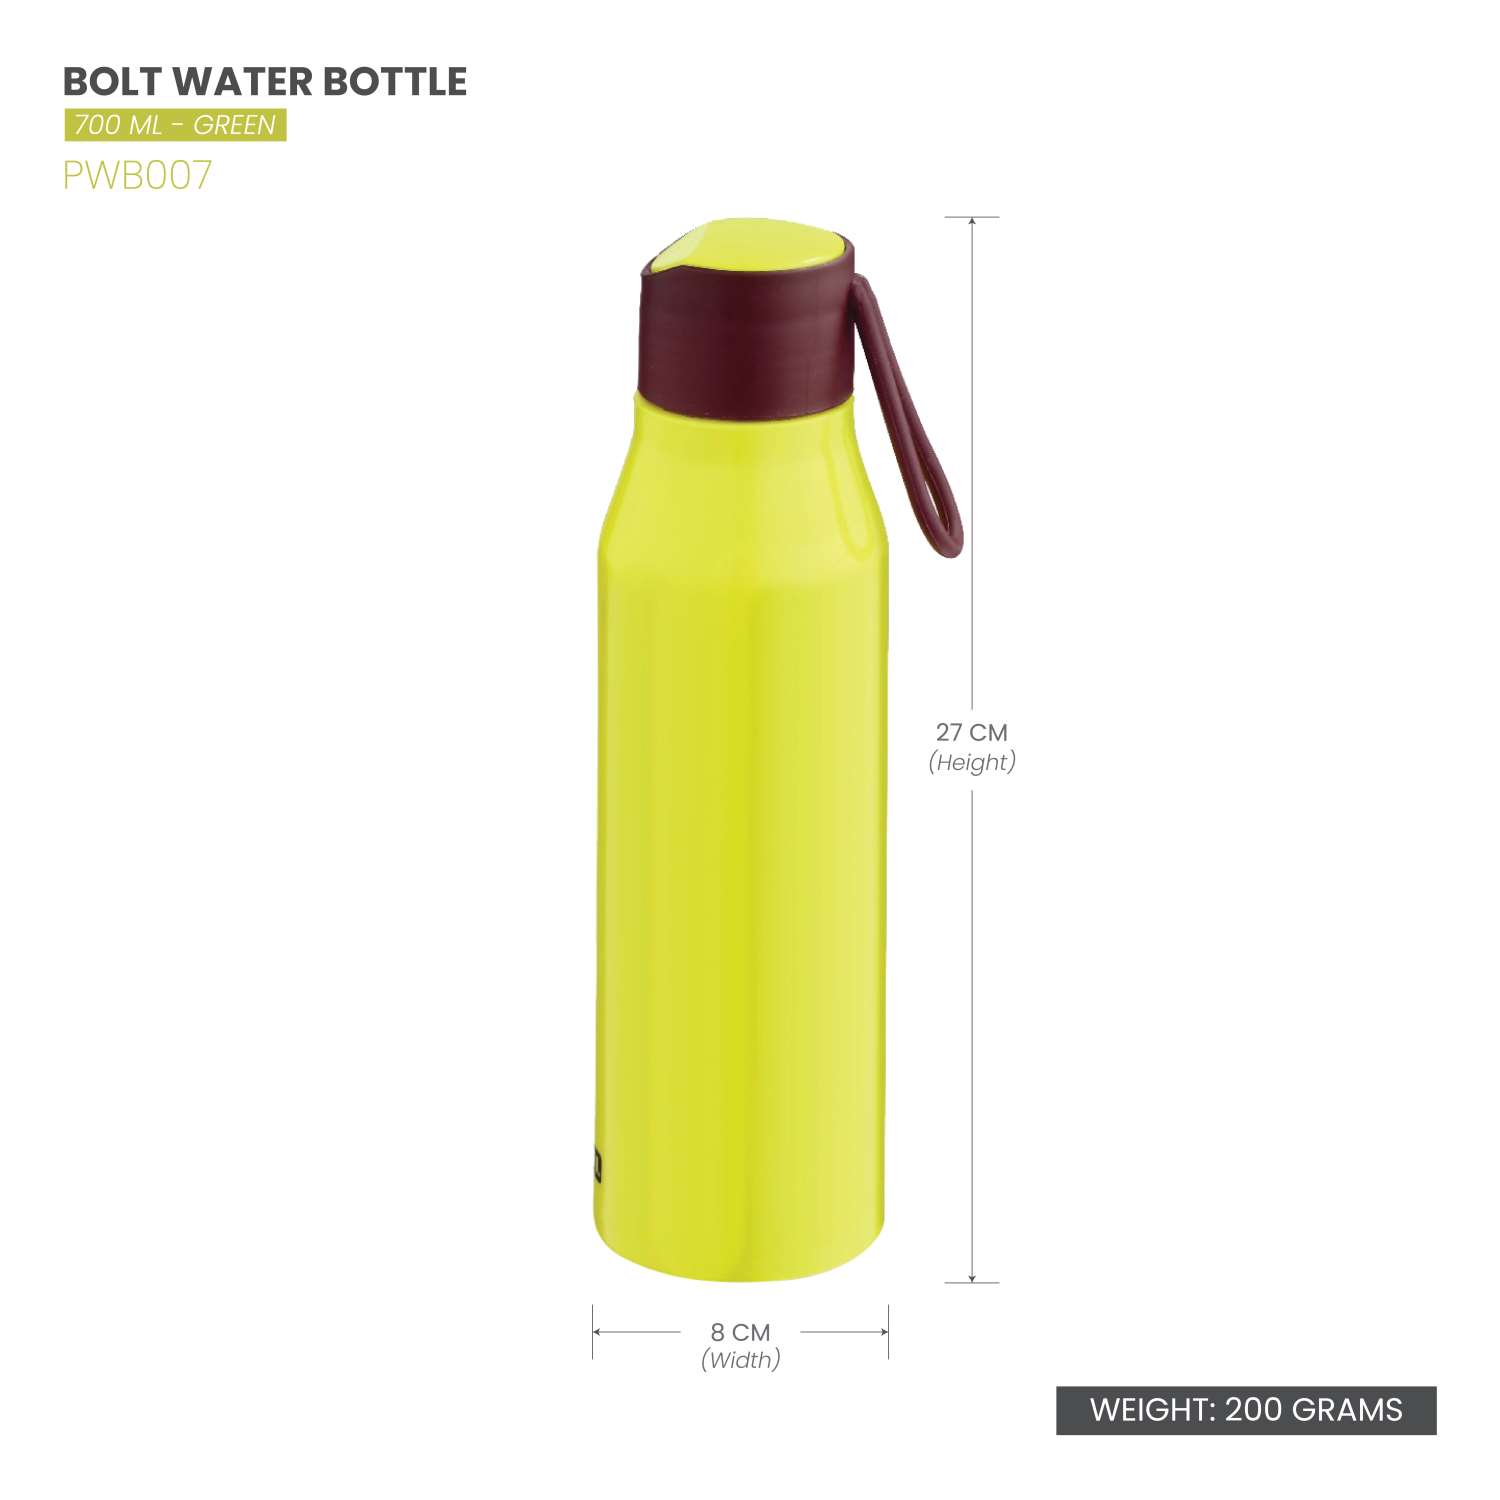 Selvel Bolt Plastic Water Bottle Green 700Ml